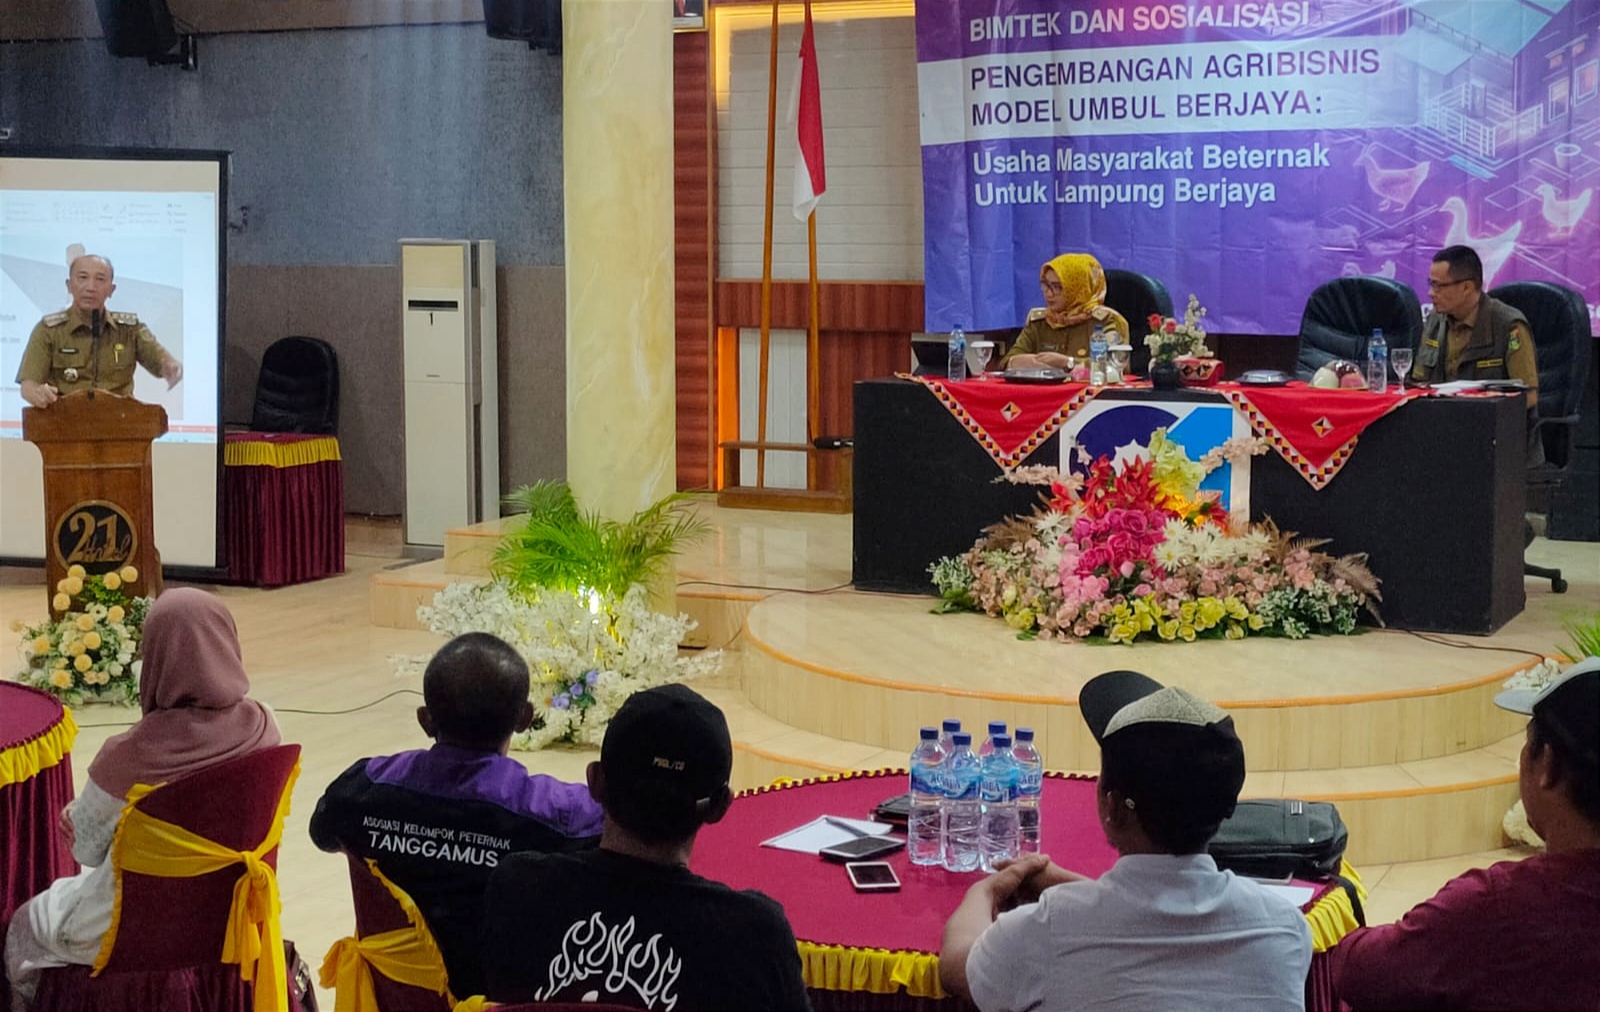 Pj. Bupati Tanggamus Lampung Buka Bimtek dan Sosialisasi Pengembangan Agribisnis Model Umbul Berjaya 